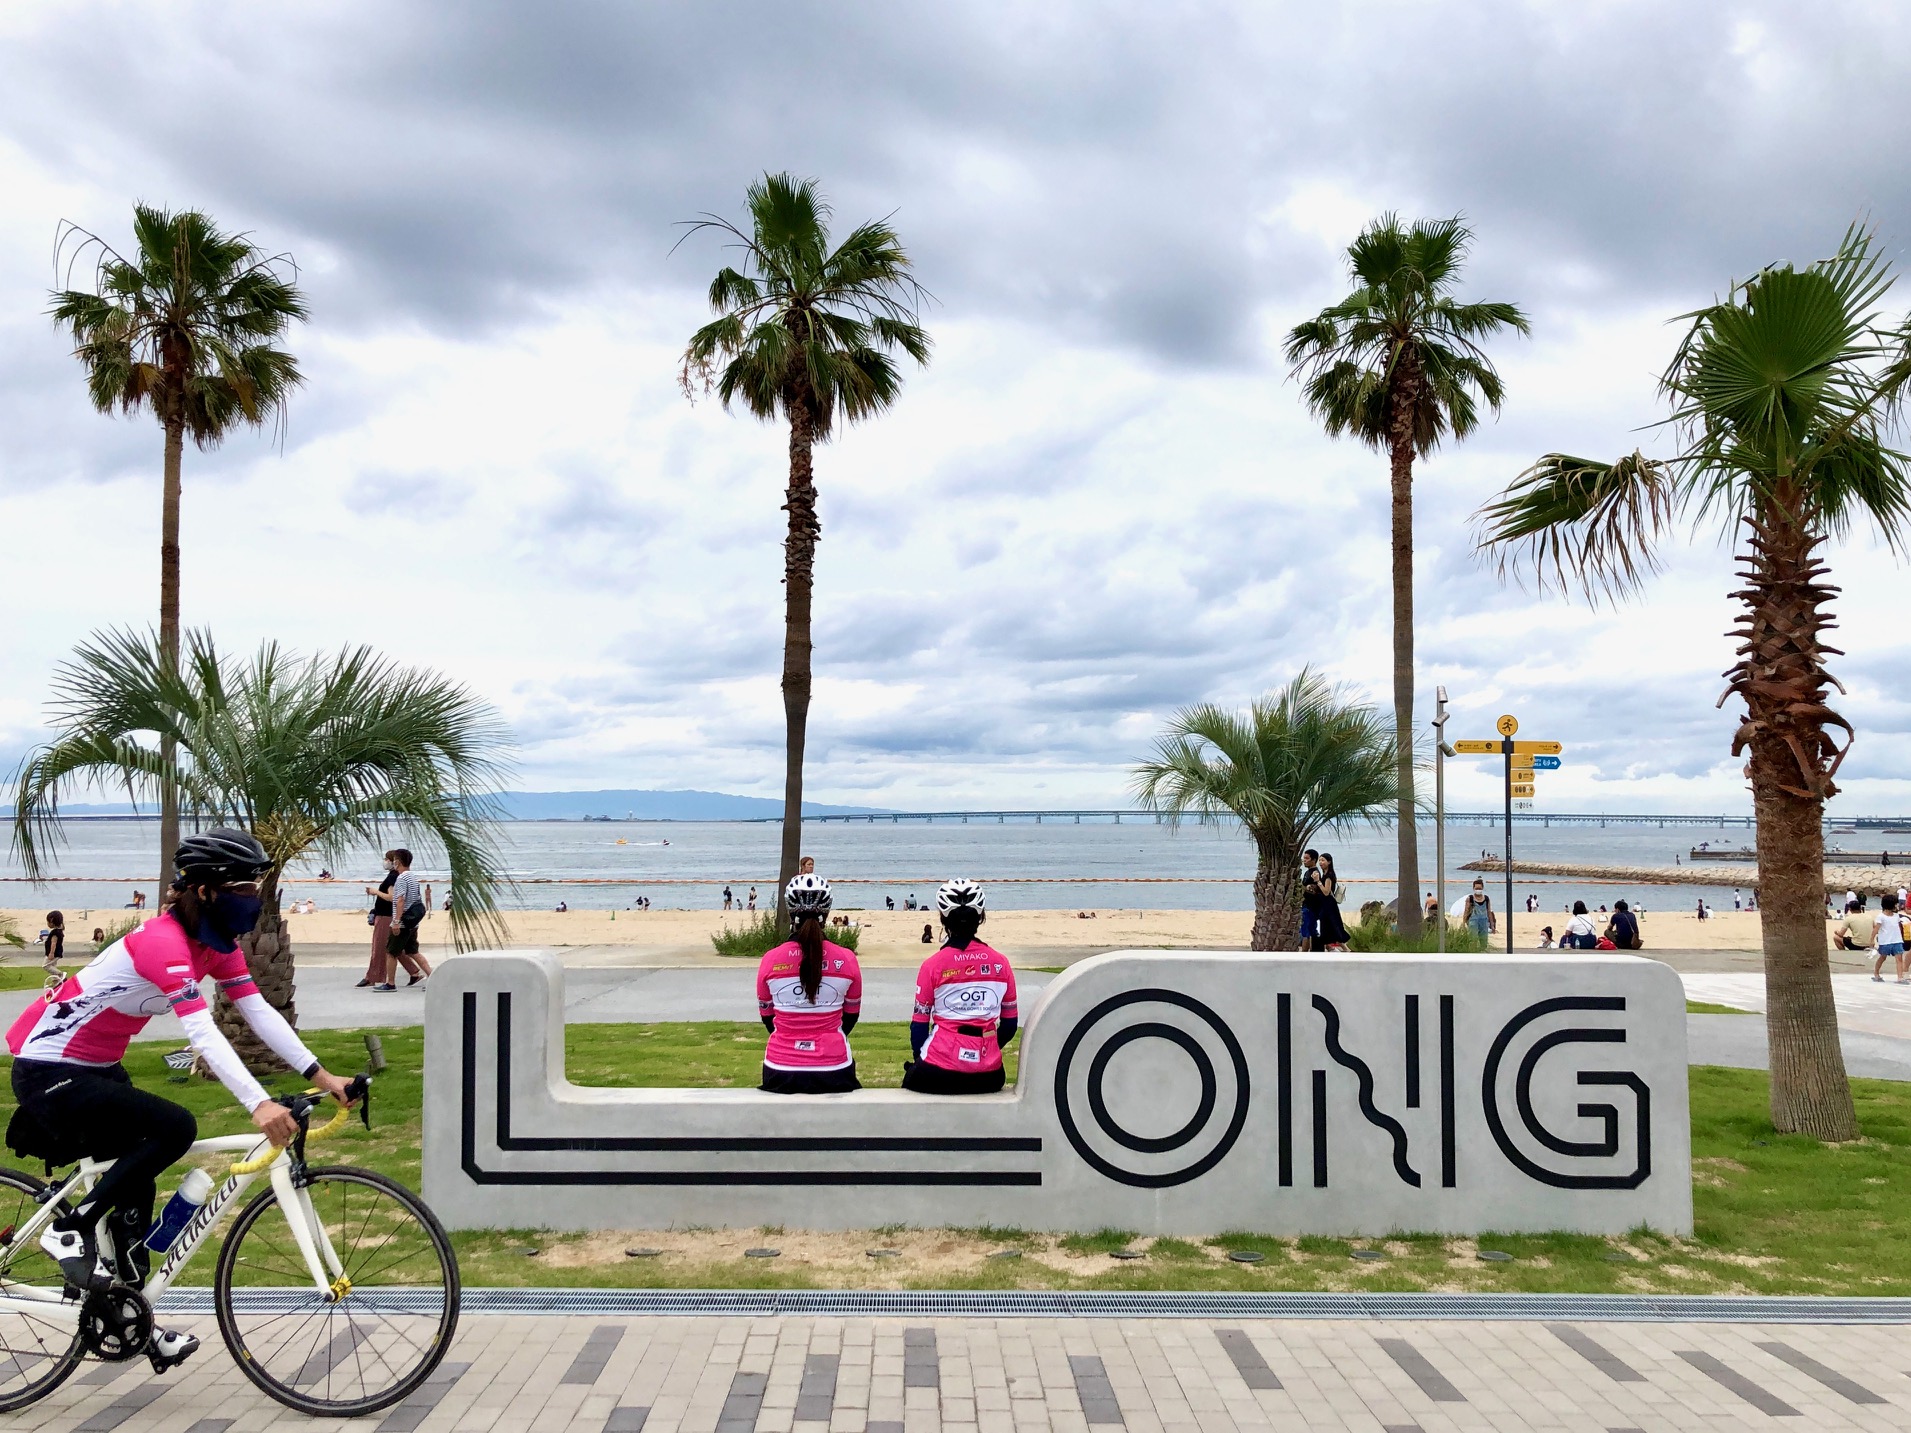 【大阪府】泉南りんくう公園「SENNAN LONG PARK」/日本中からアクセス抜群の海辺リゾートを楽しむサイクリング